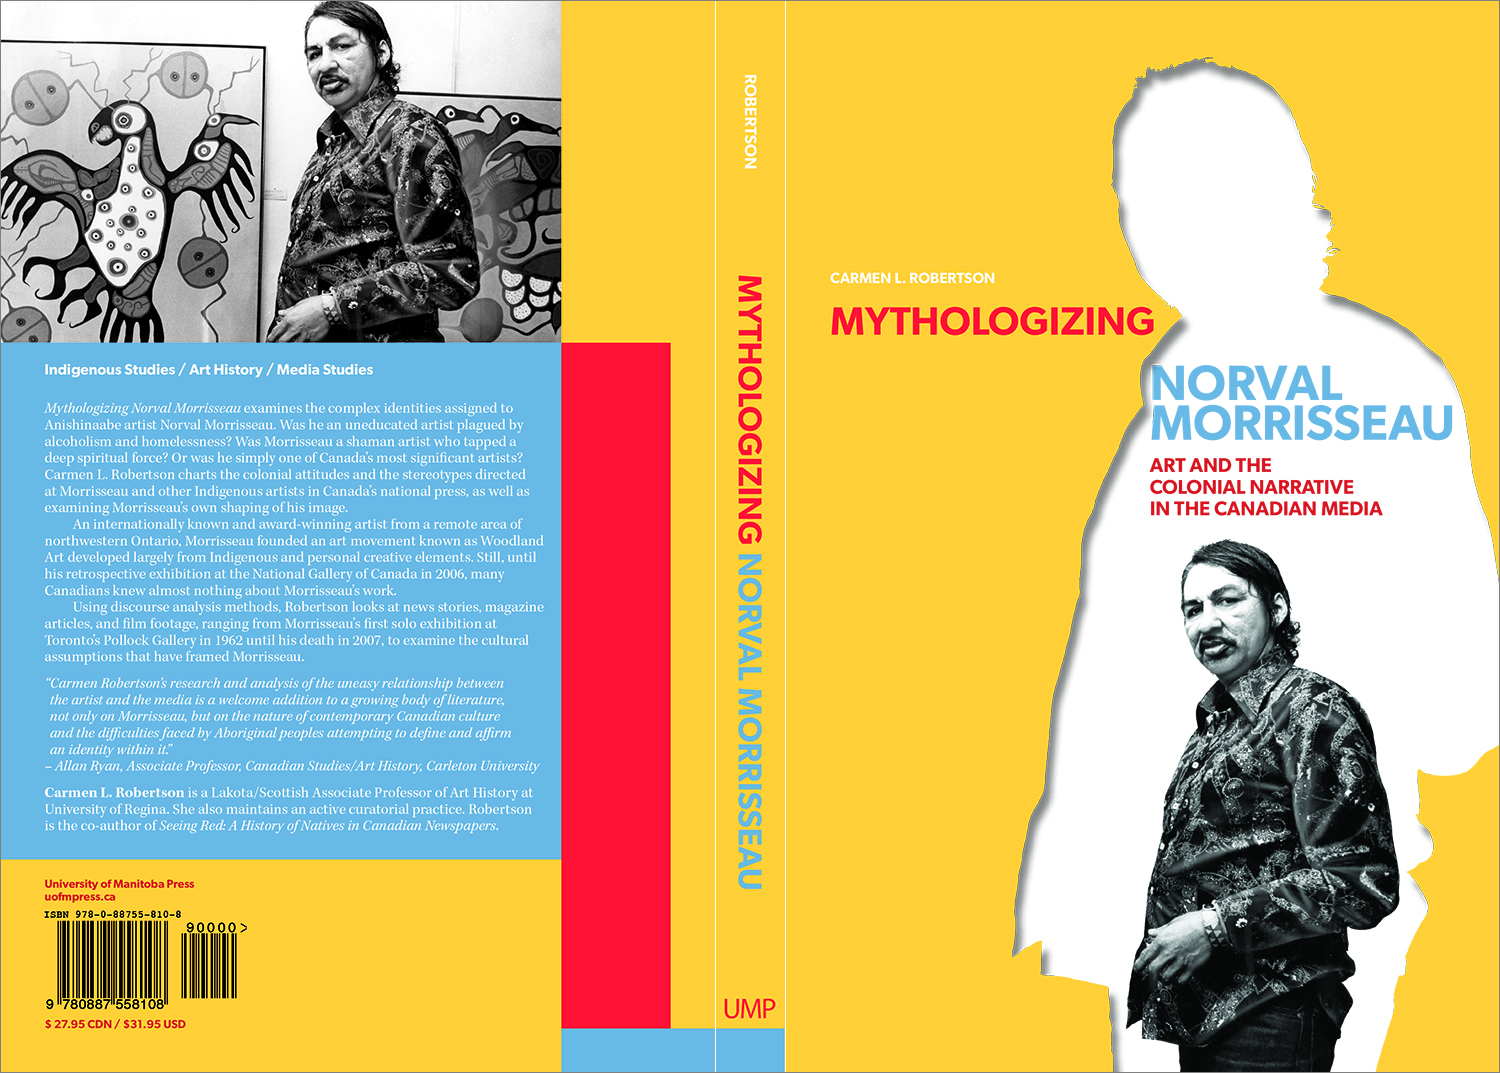 Mythologizing Norval Morrisseau